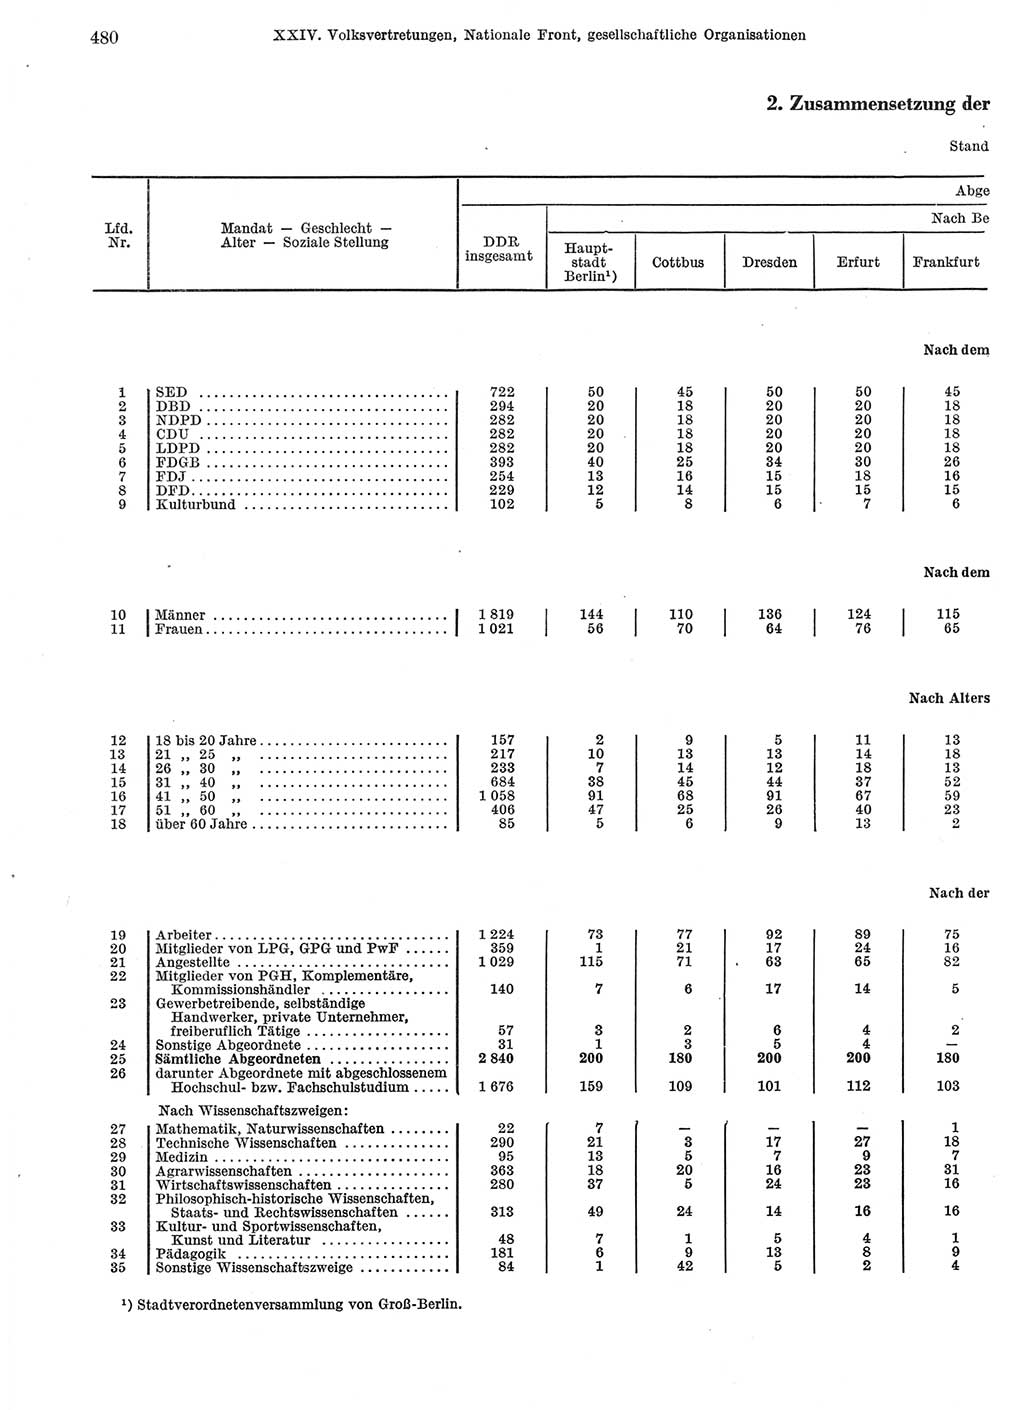 Statistisches Jahrbuch der Deutschen Demokratischen Republik (DDR) 1974, Seite 480 (Stat. Jb. DDR 1974, S. 480)